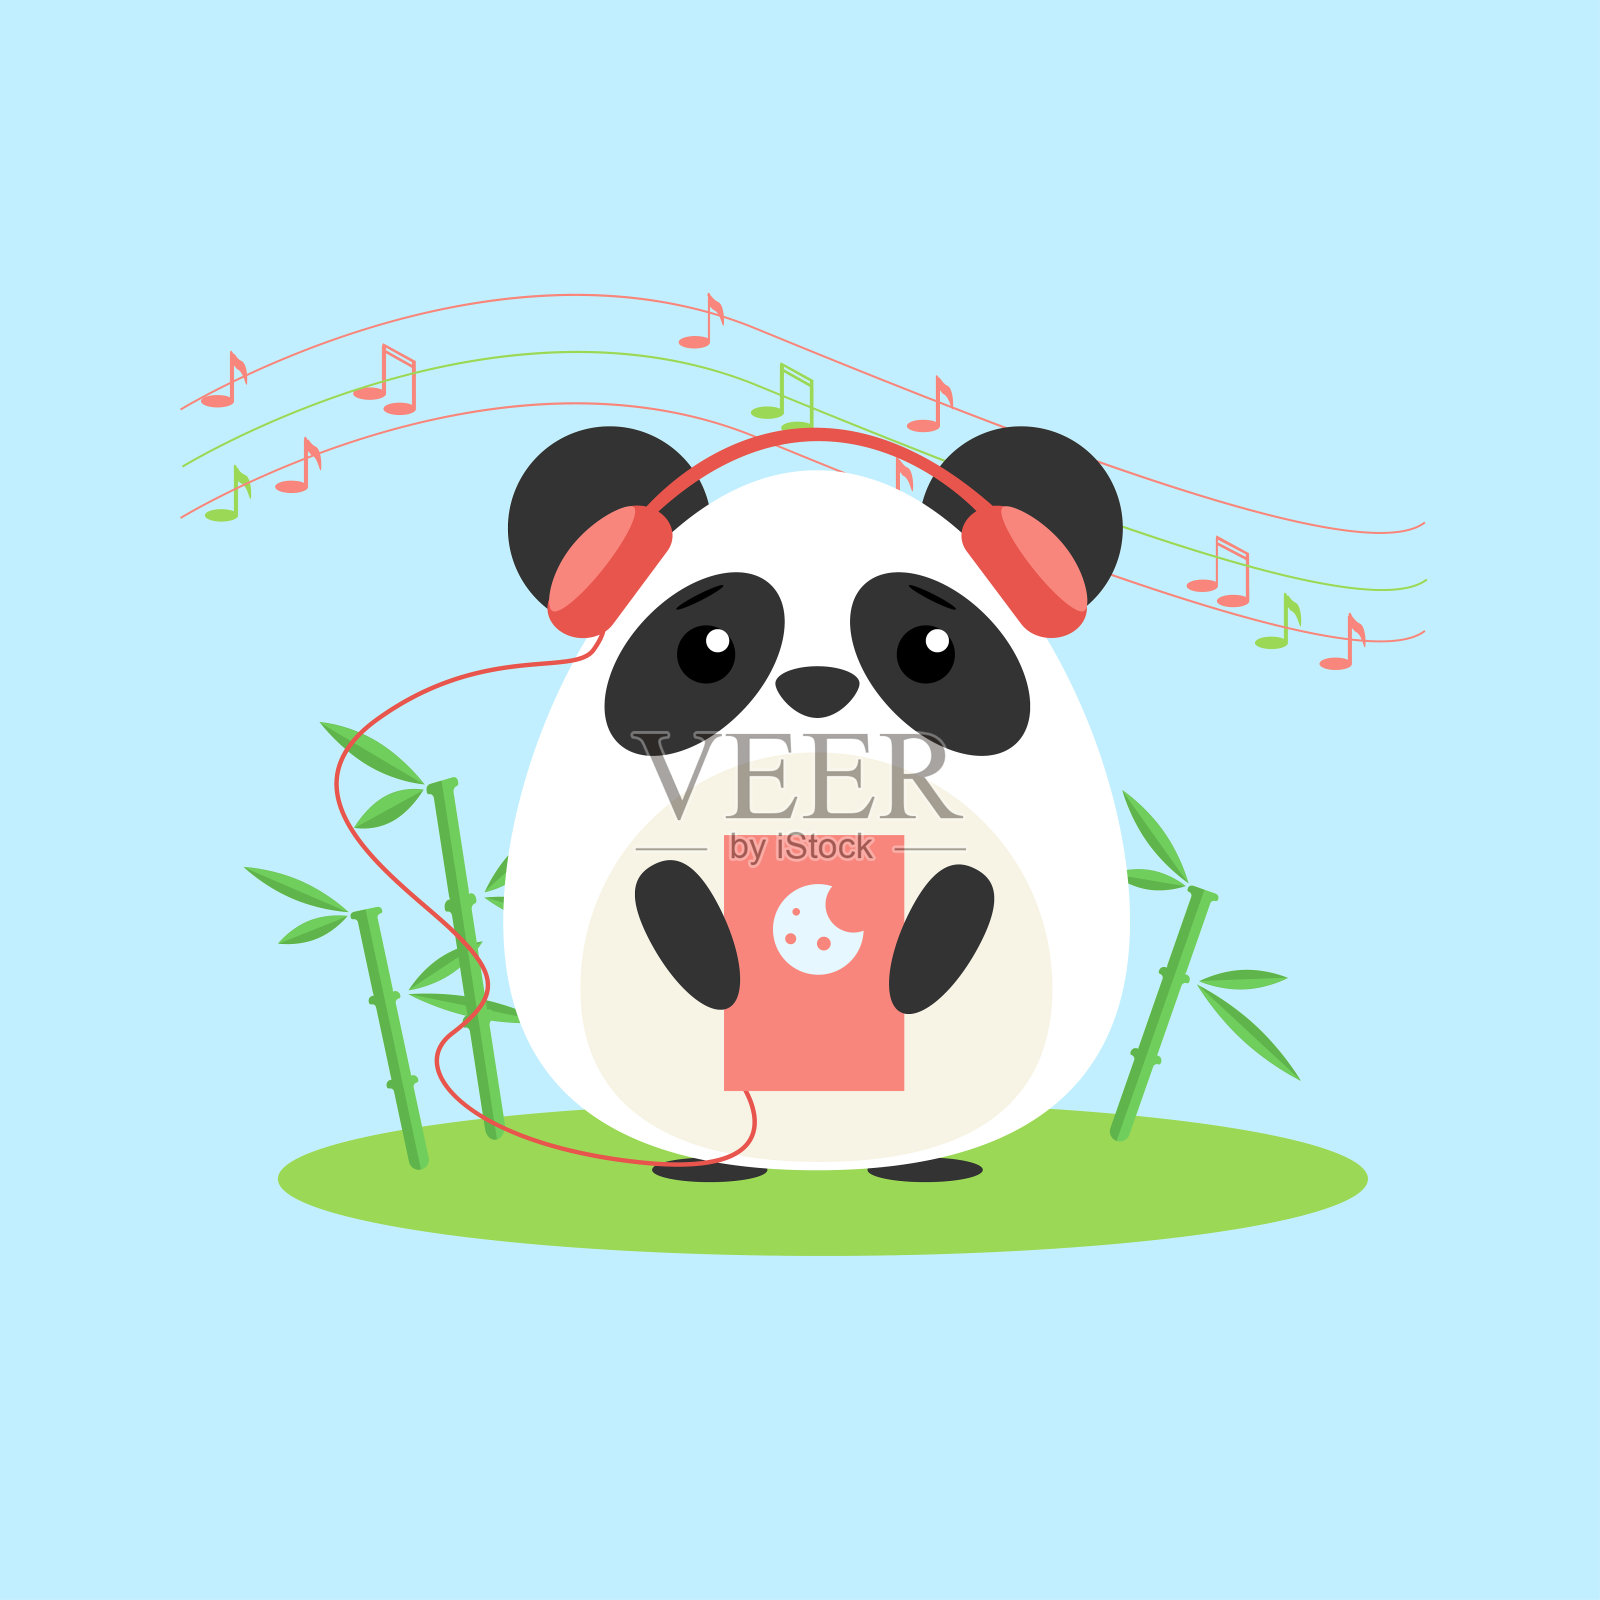 矢量插图拟人化熊猫谁听音乐从设备。可爱的动漫风格插画图片素材